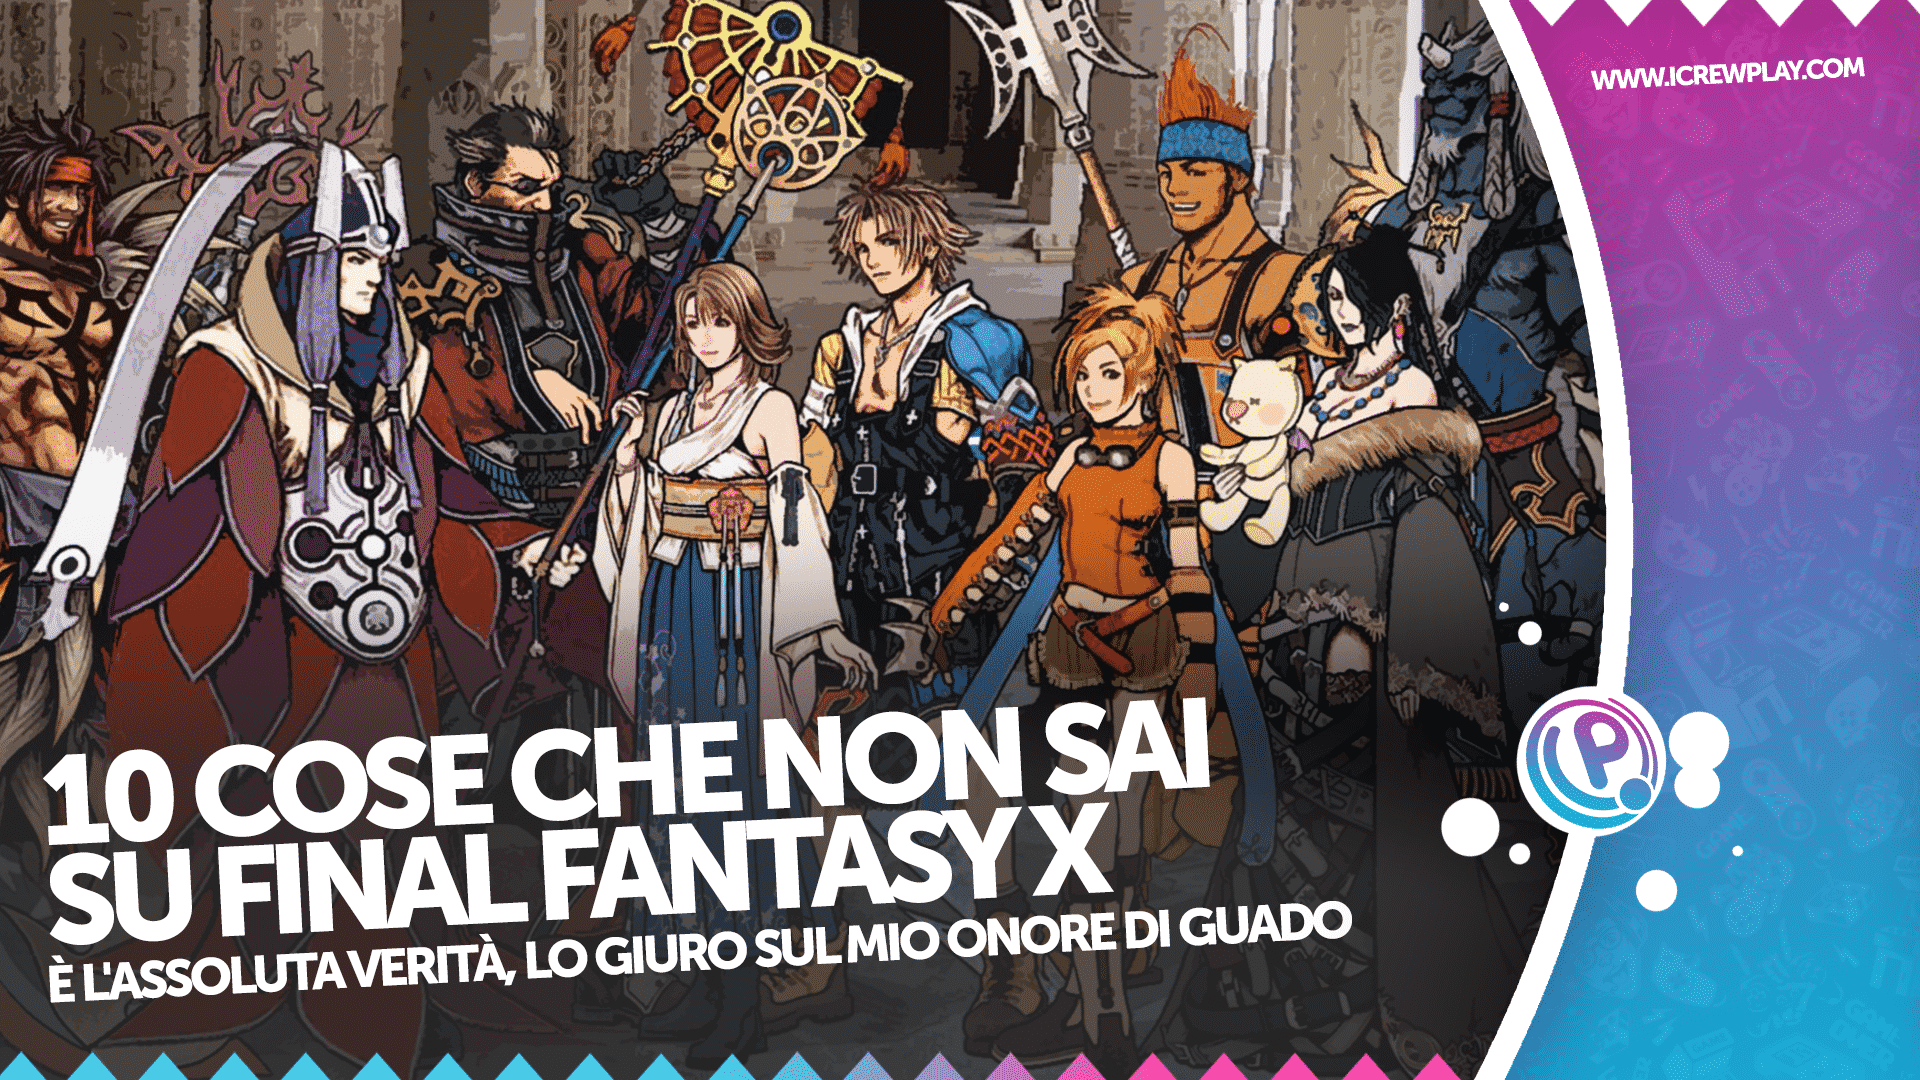 10 cose che non sai su Final Fantasy X 8